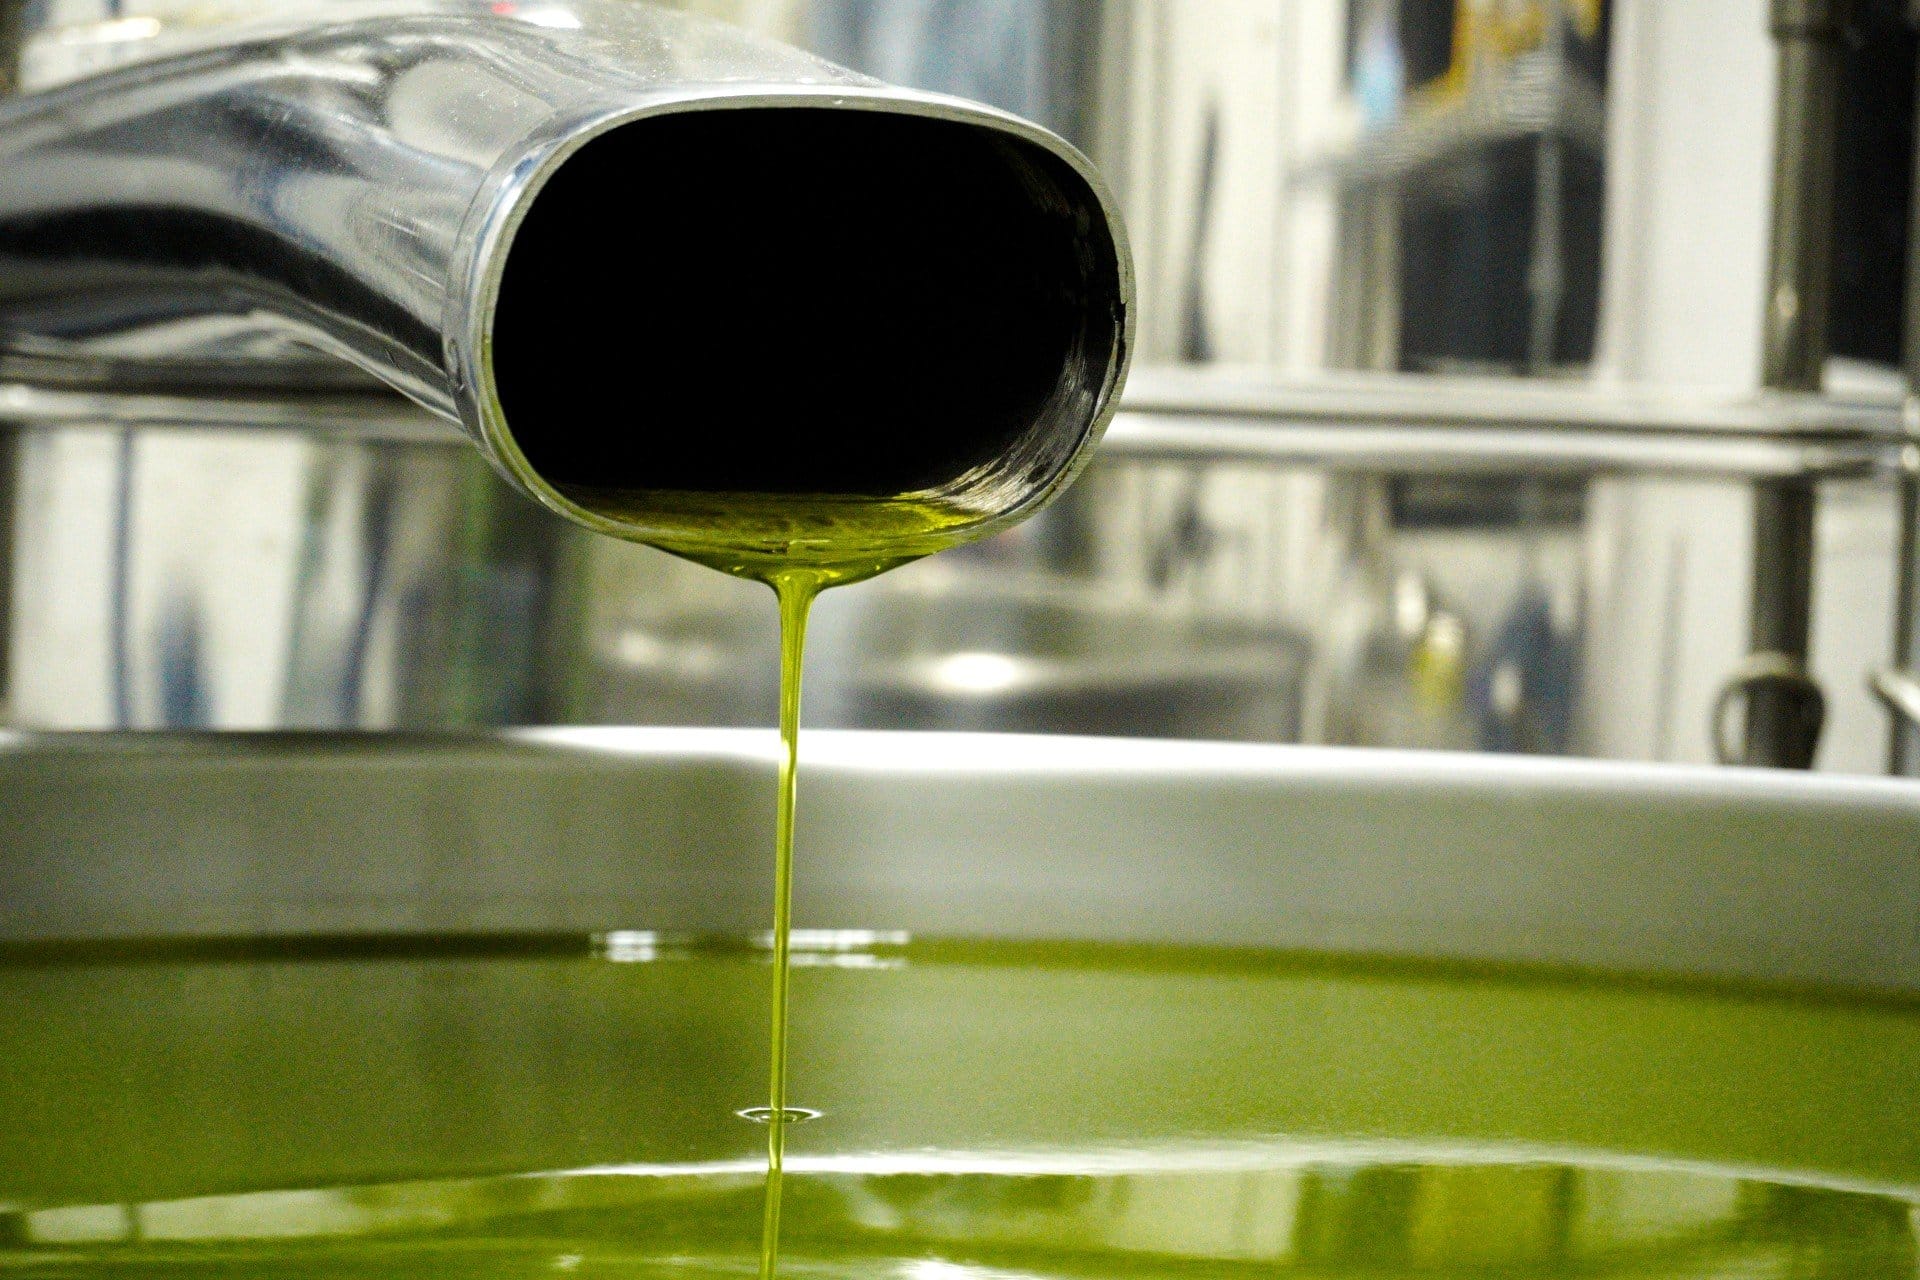 zuid-amerika-profielen-de-beste-olijfolie-productie-brazilië-grootste-producent-viert-een-triomfantelijke-oogst-olijfolie-tijden